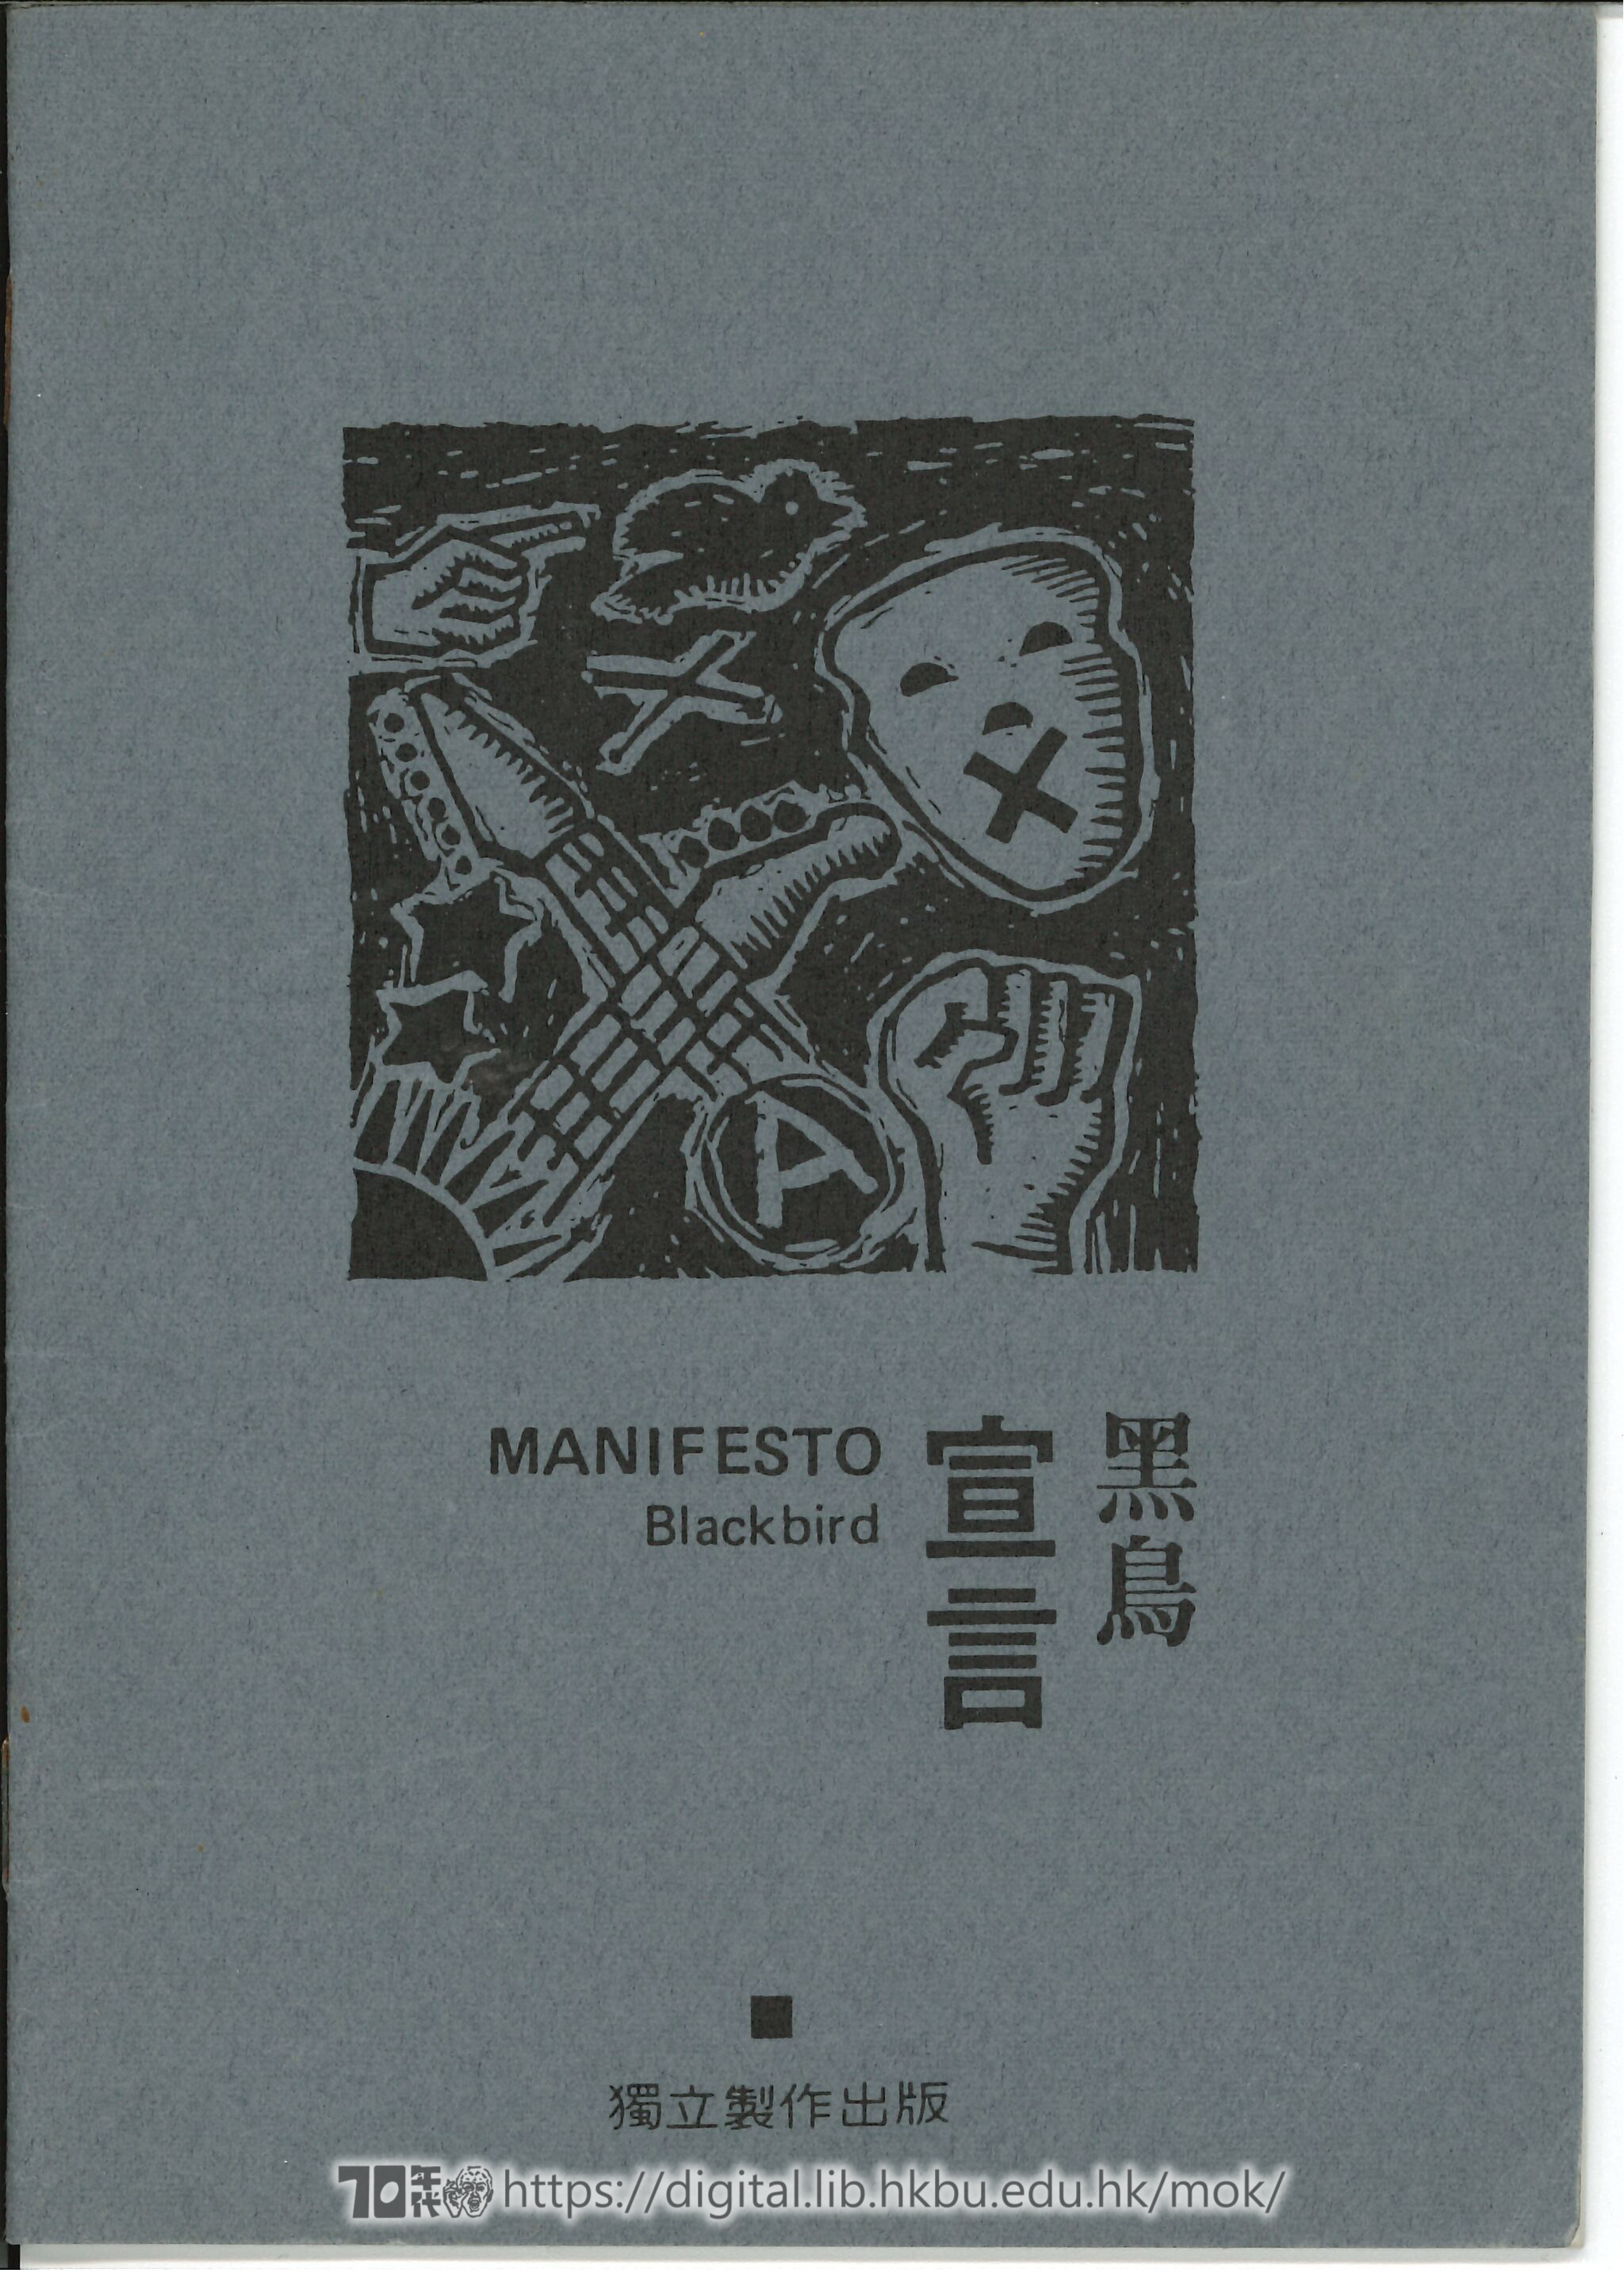 Blackbird  Blackbird: a manifesto  